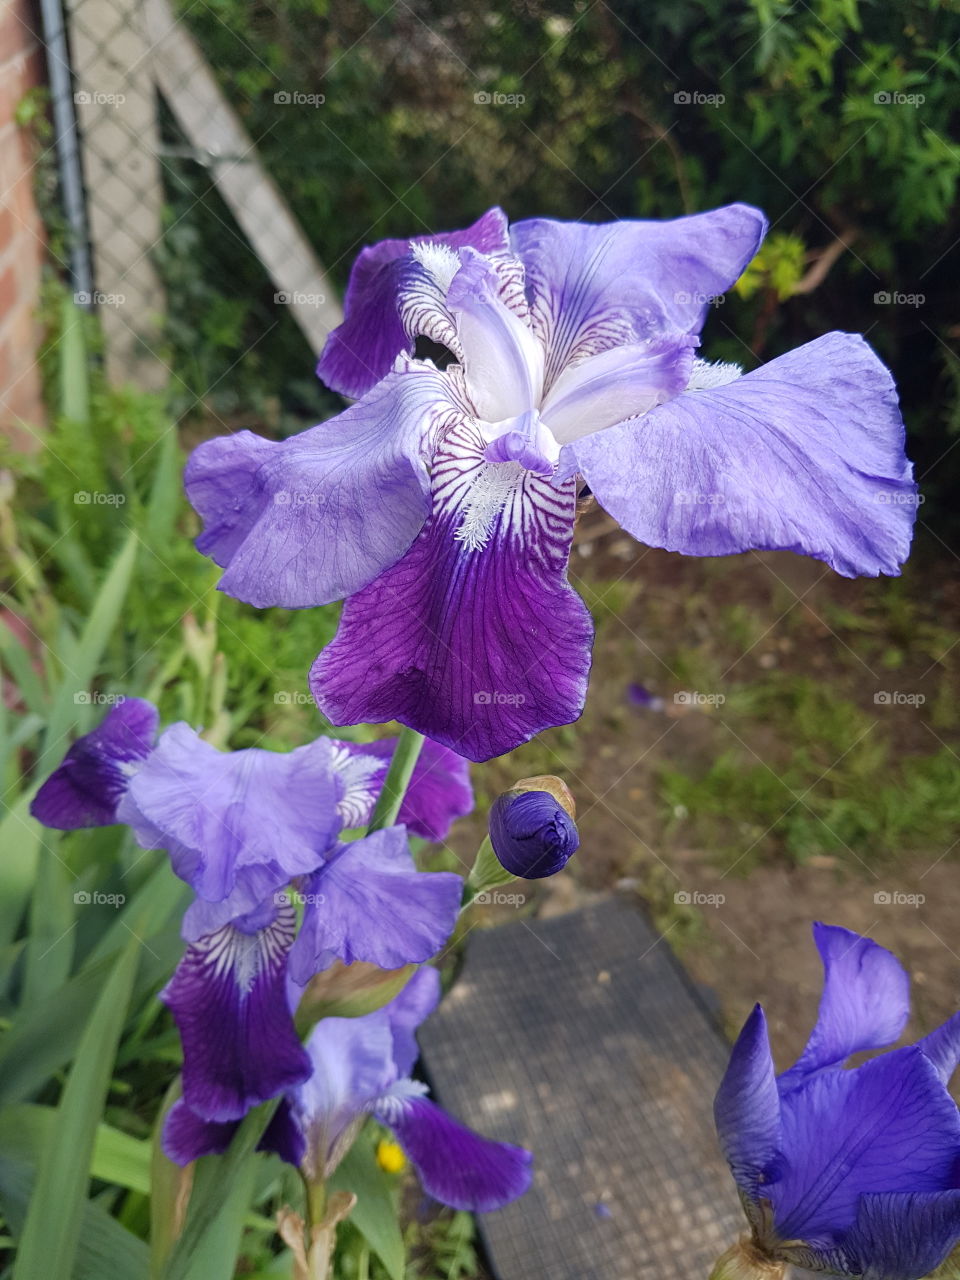 Irises in bloom